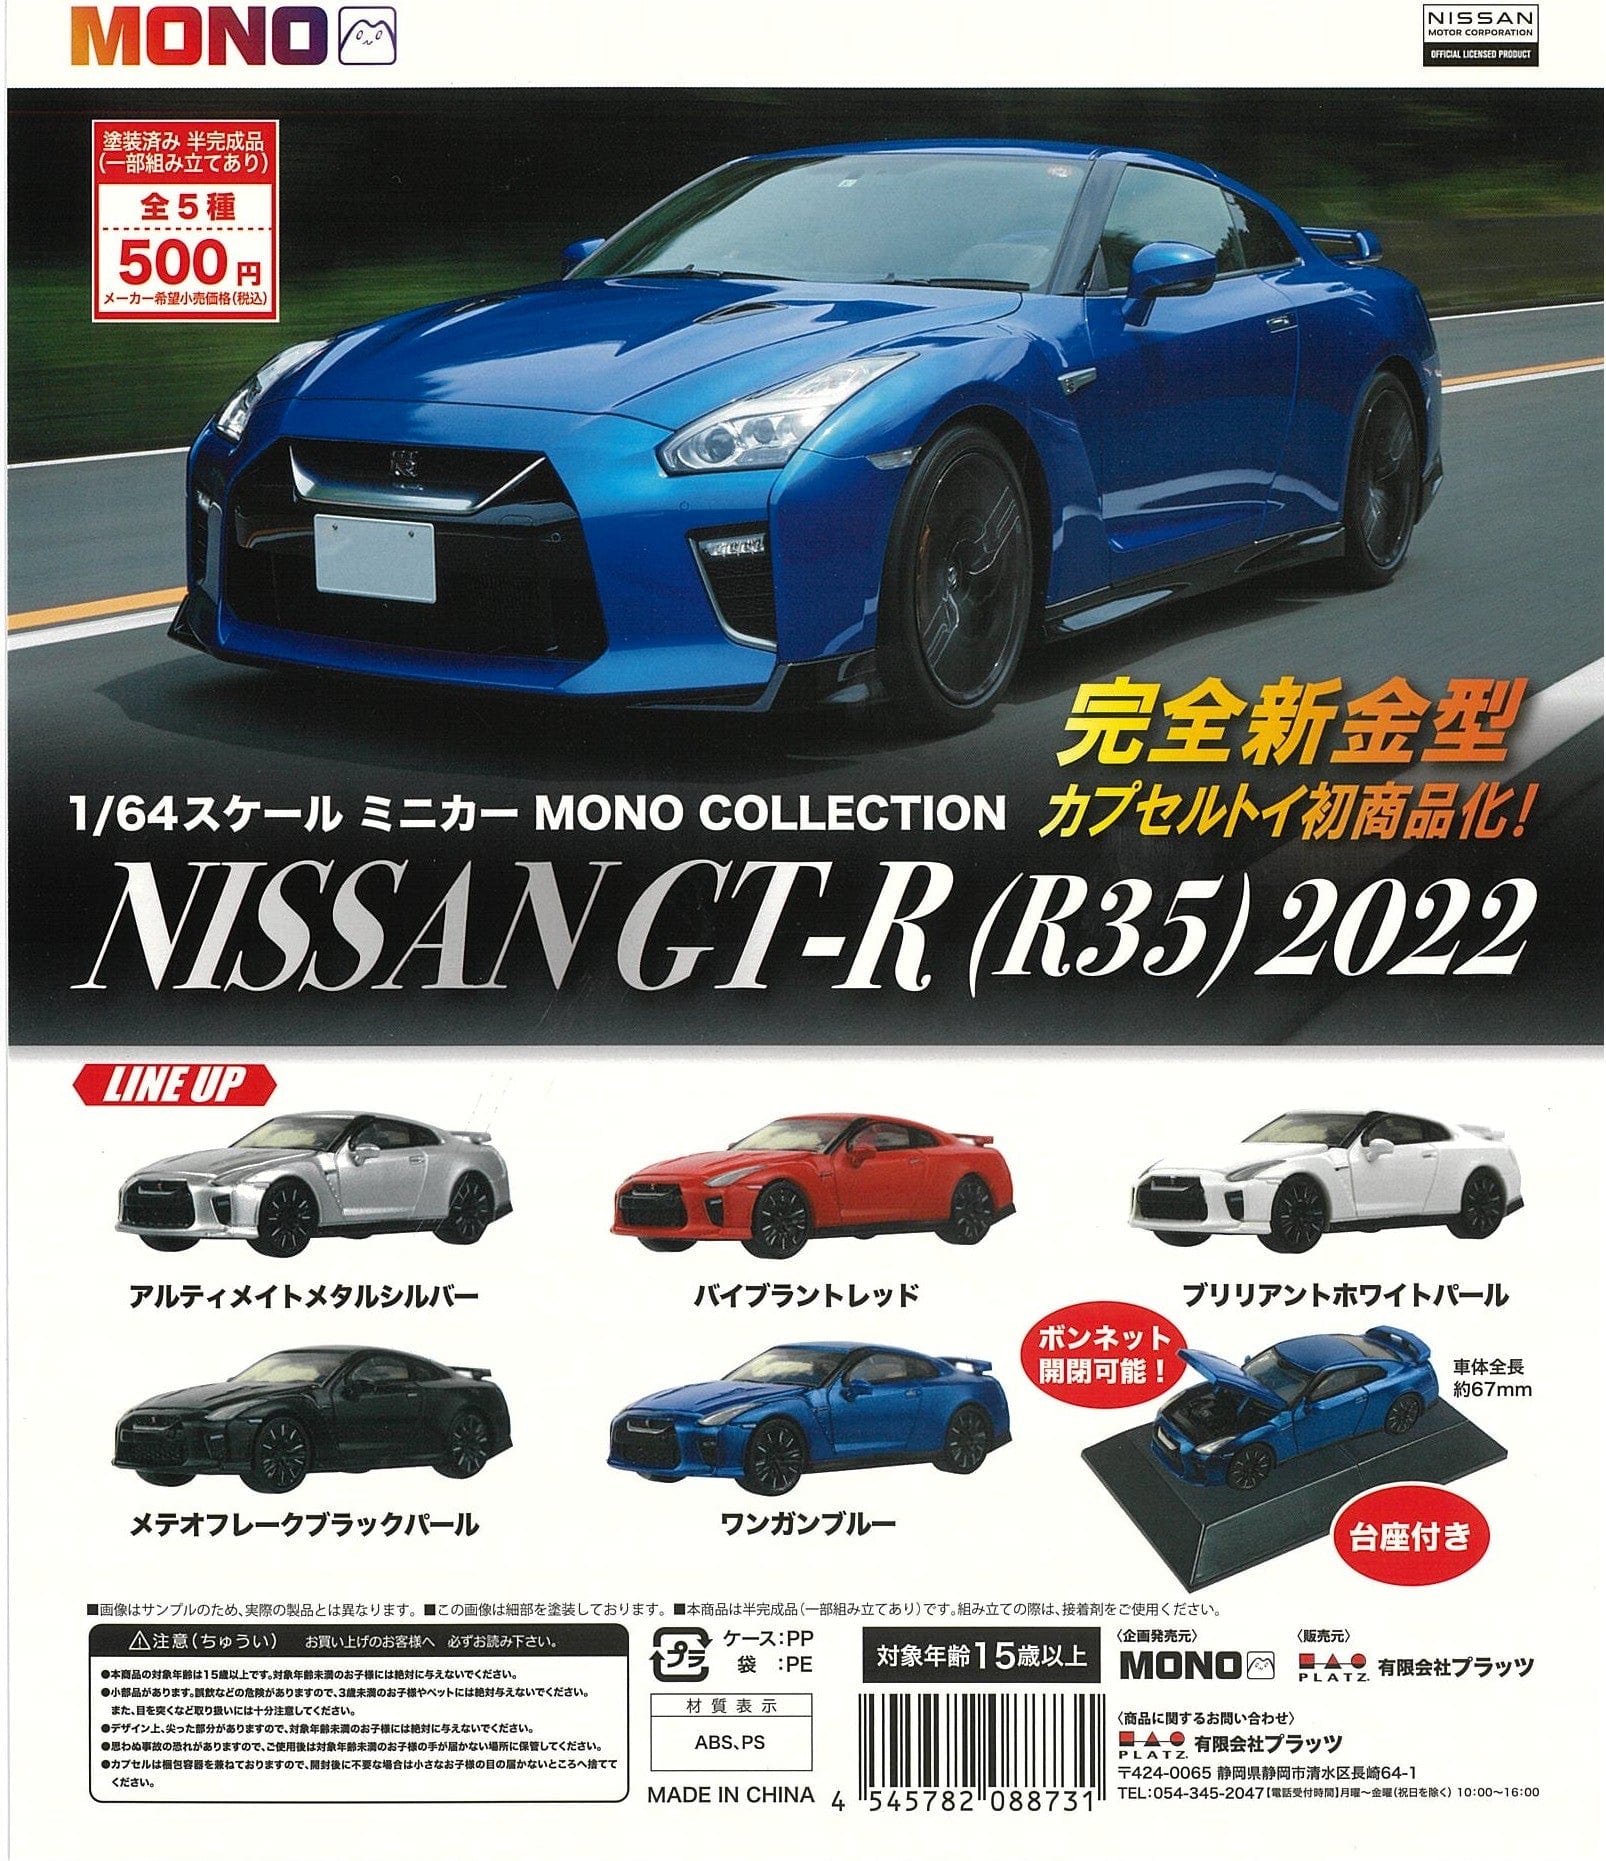 Mono CP2472 1/64 Scale Mini Car Mono Collection NISSAN GT-R (R35) 2022